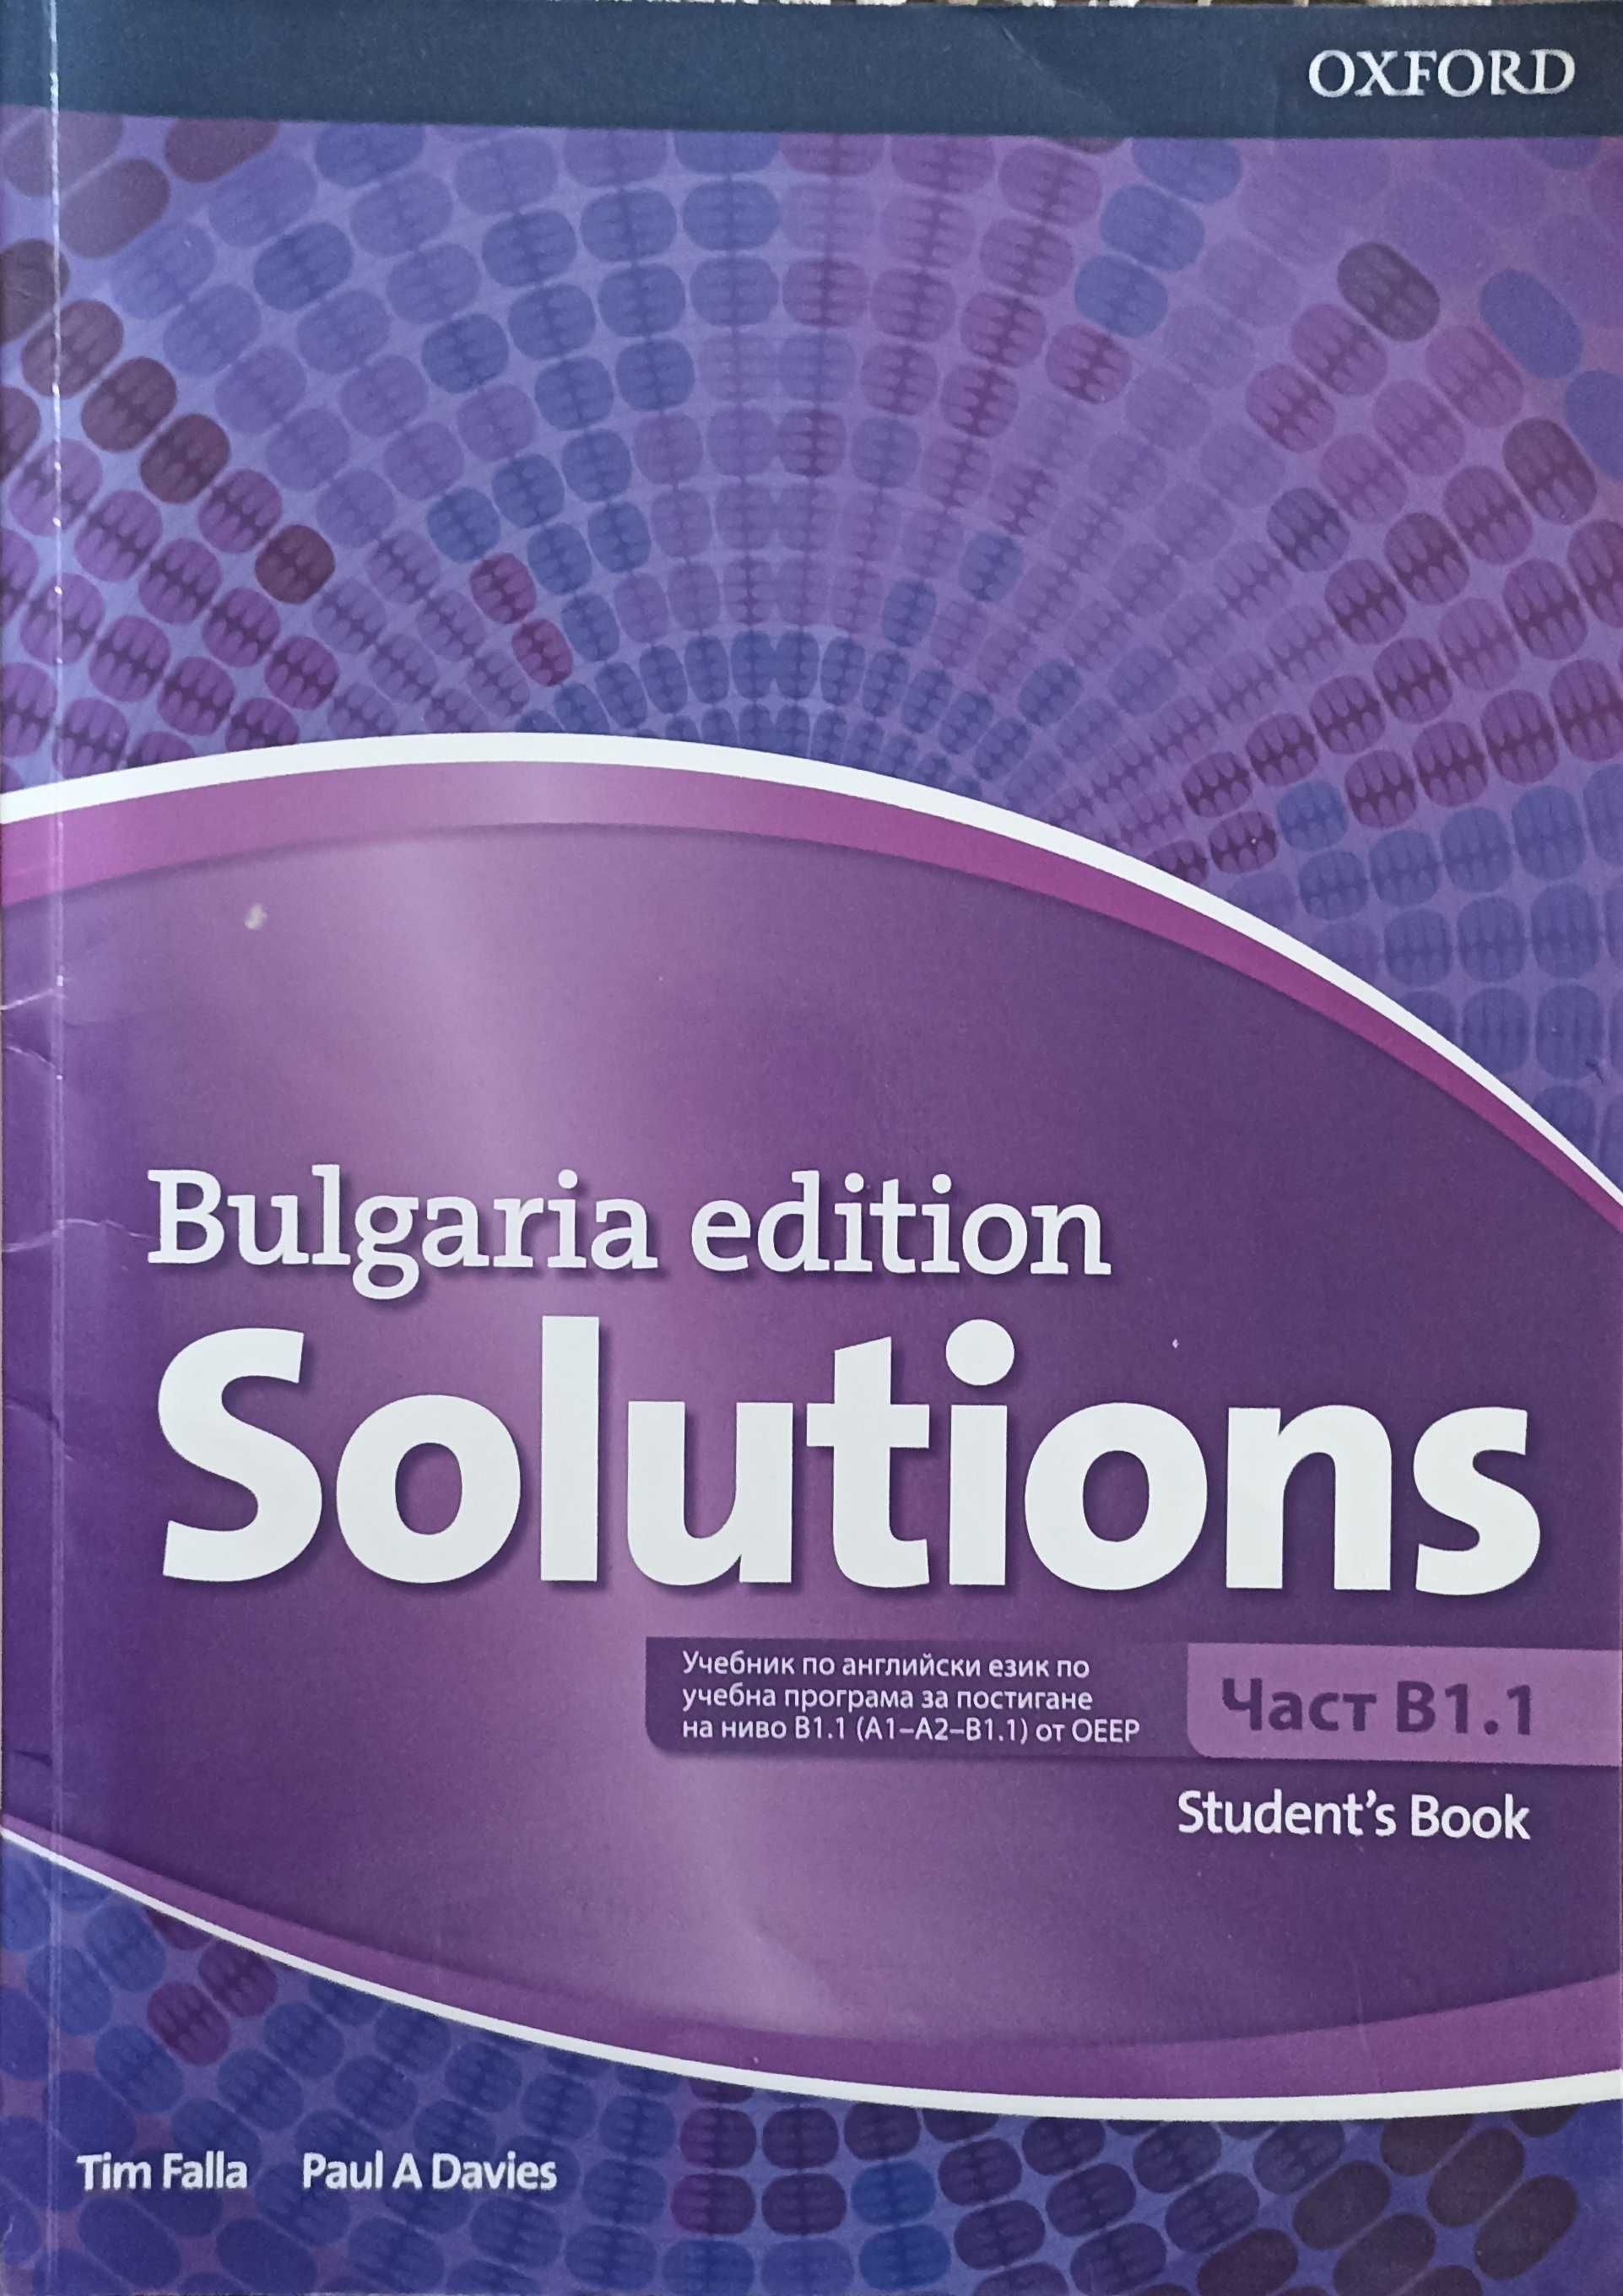 Учебници по английски език Solution A1,A2, B1.1, Intermediate workbook